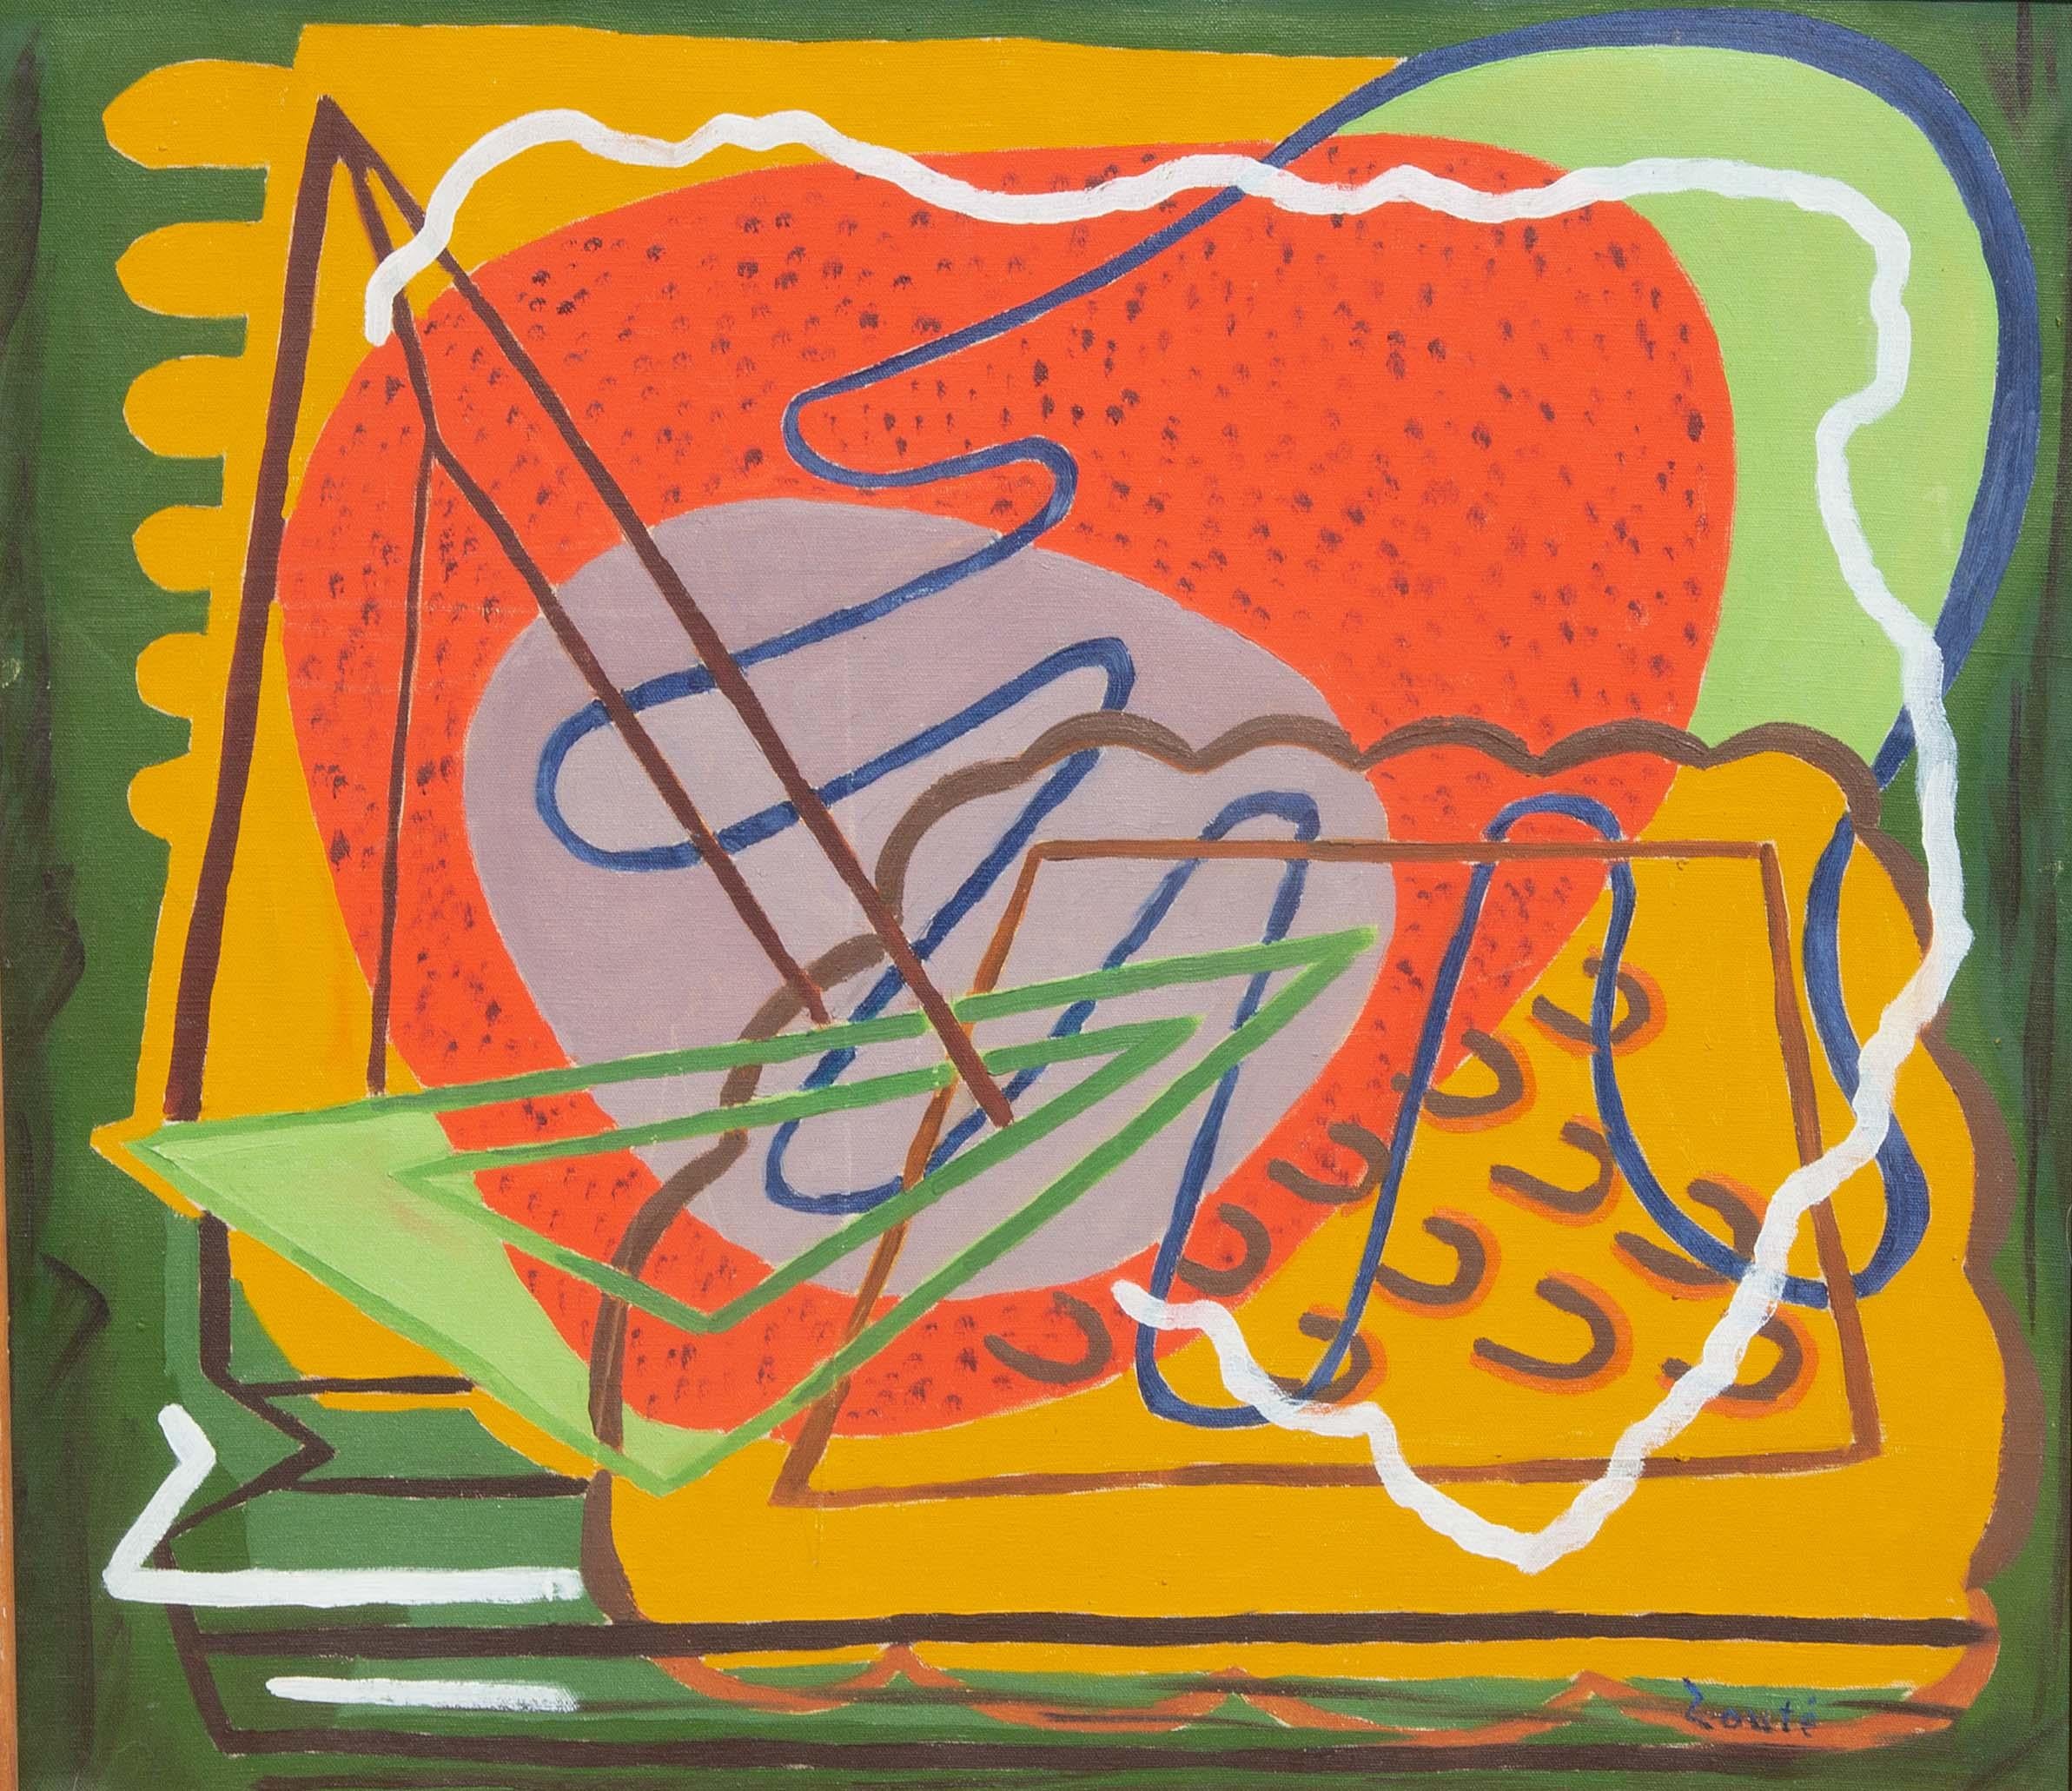 Abstraktes modernistisches Ölgemälde von Zoute. Öl auf Leinwand auf Karton montiert. Gemalt etwa in den 1940er Jahren.
Zoute (geboren als Leon Salter, 1903-1976) war Autodidakt und wurde zu Lebzeiten viel ausgestellt. Er malte von 1940-1954